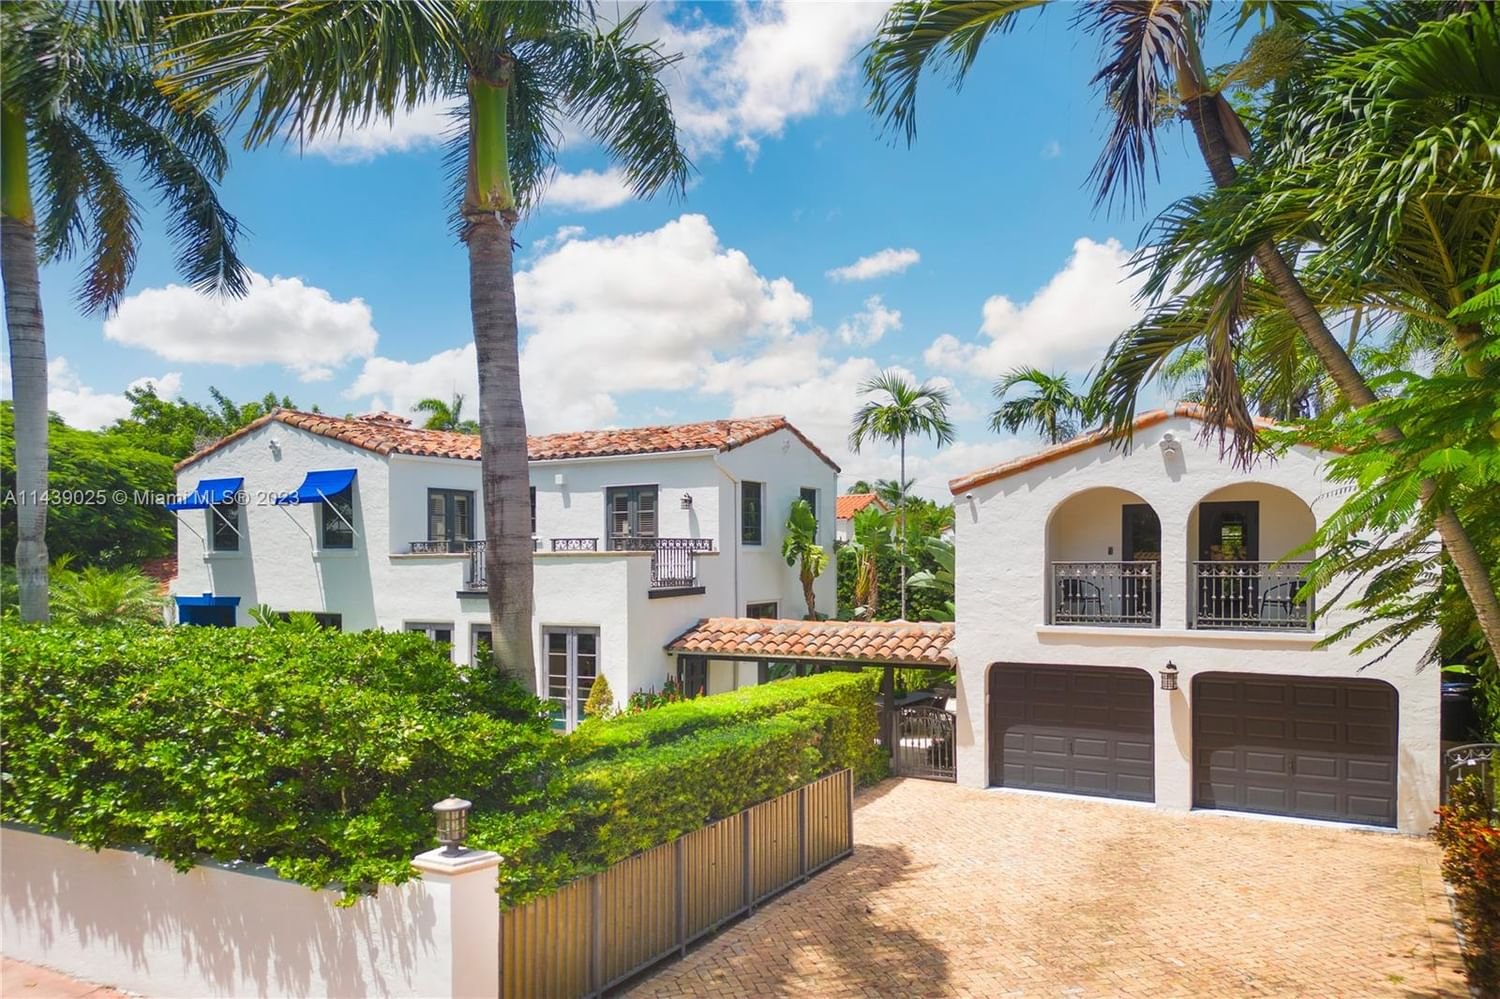 Real estate property located at 5201 La Gorce Dr, Miami-Dade County, Miami Beach, FL